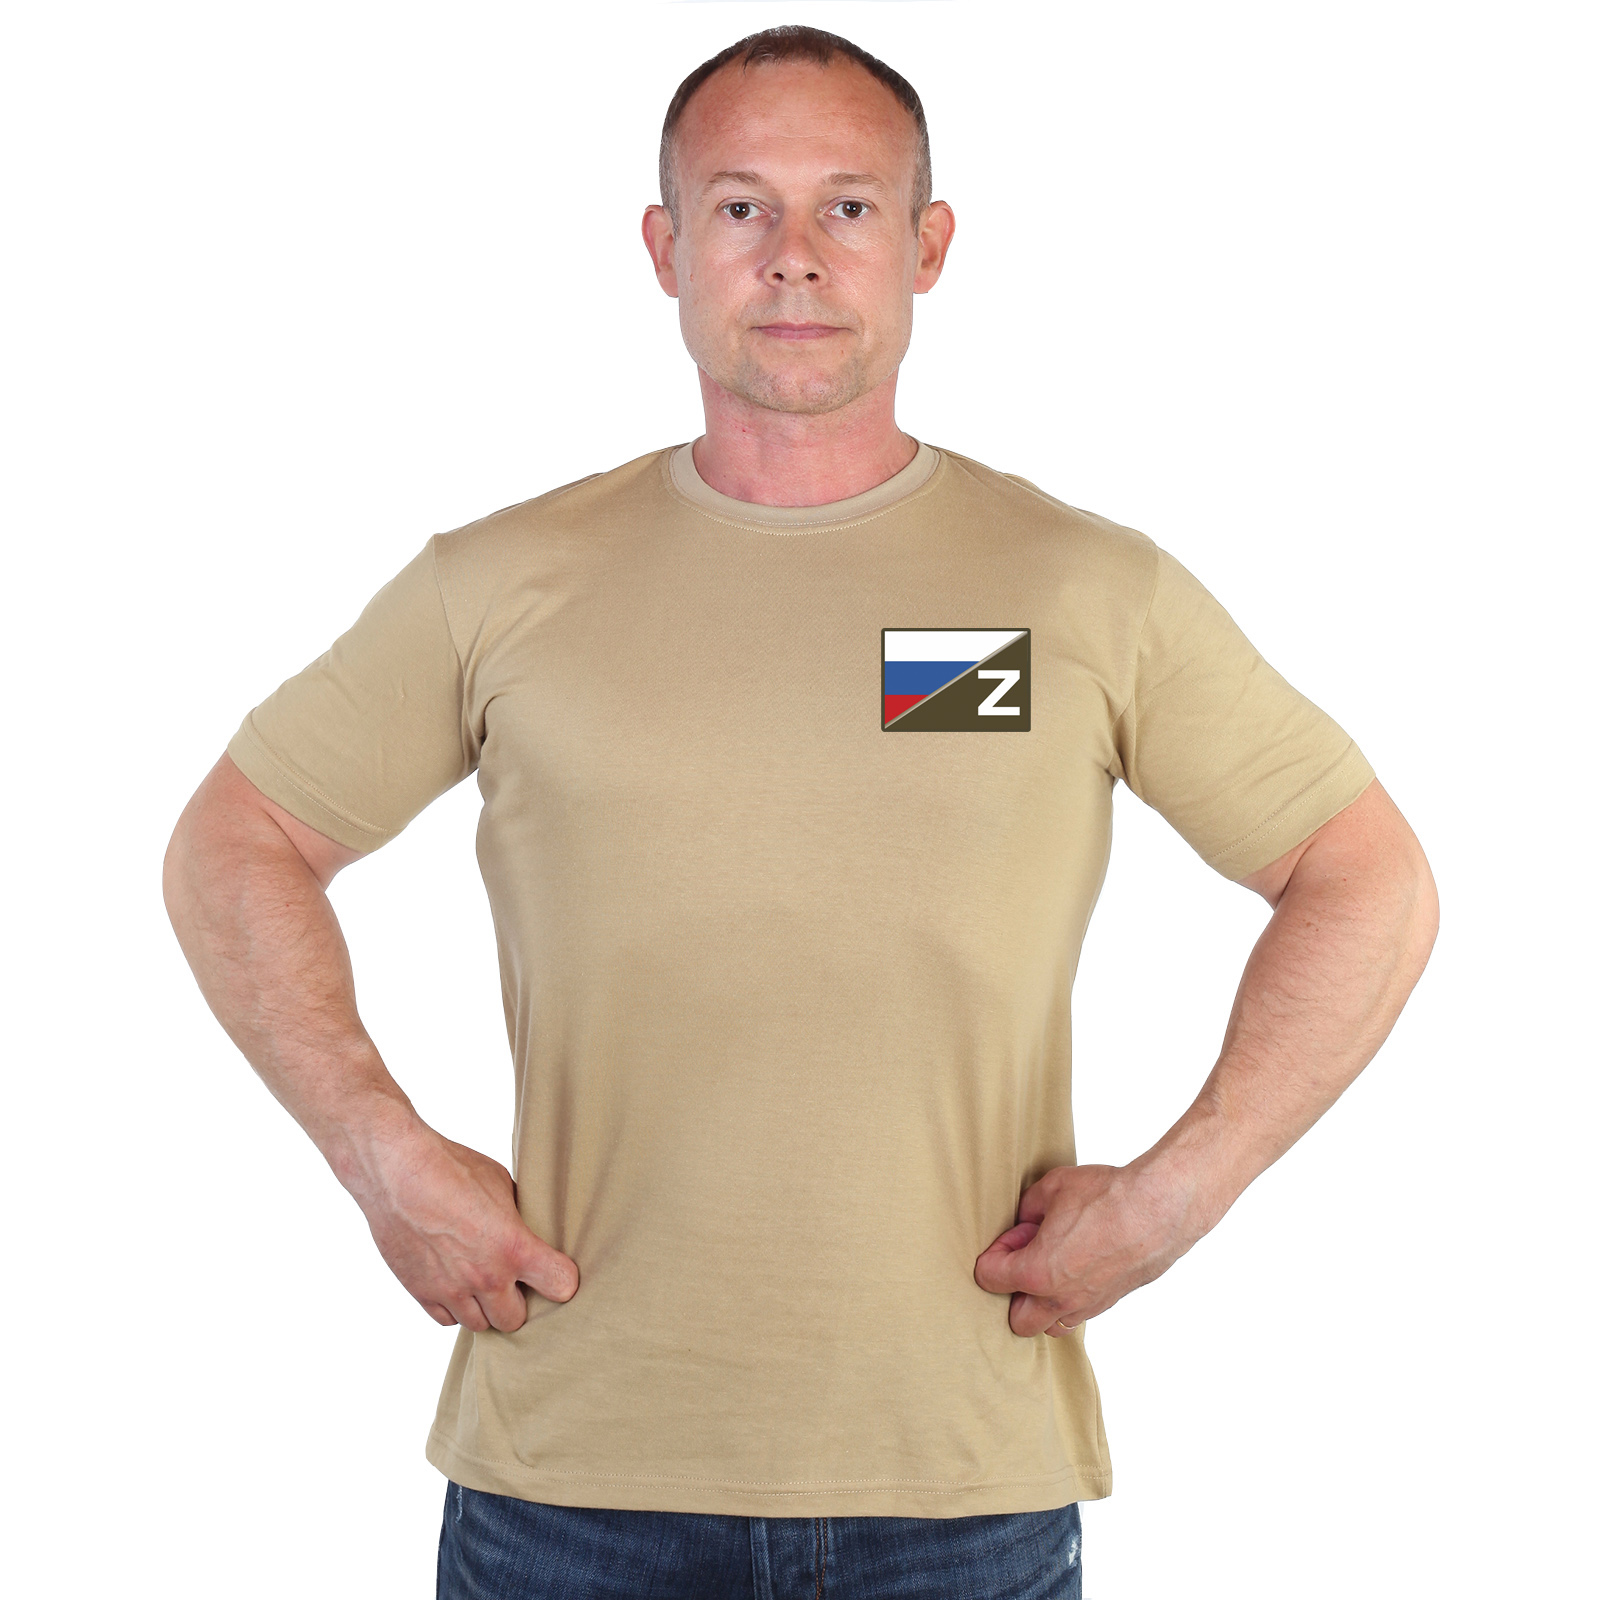 Песочная футболка с термотрансфером "Полевой шеврон Z с триколором"